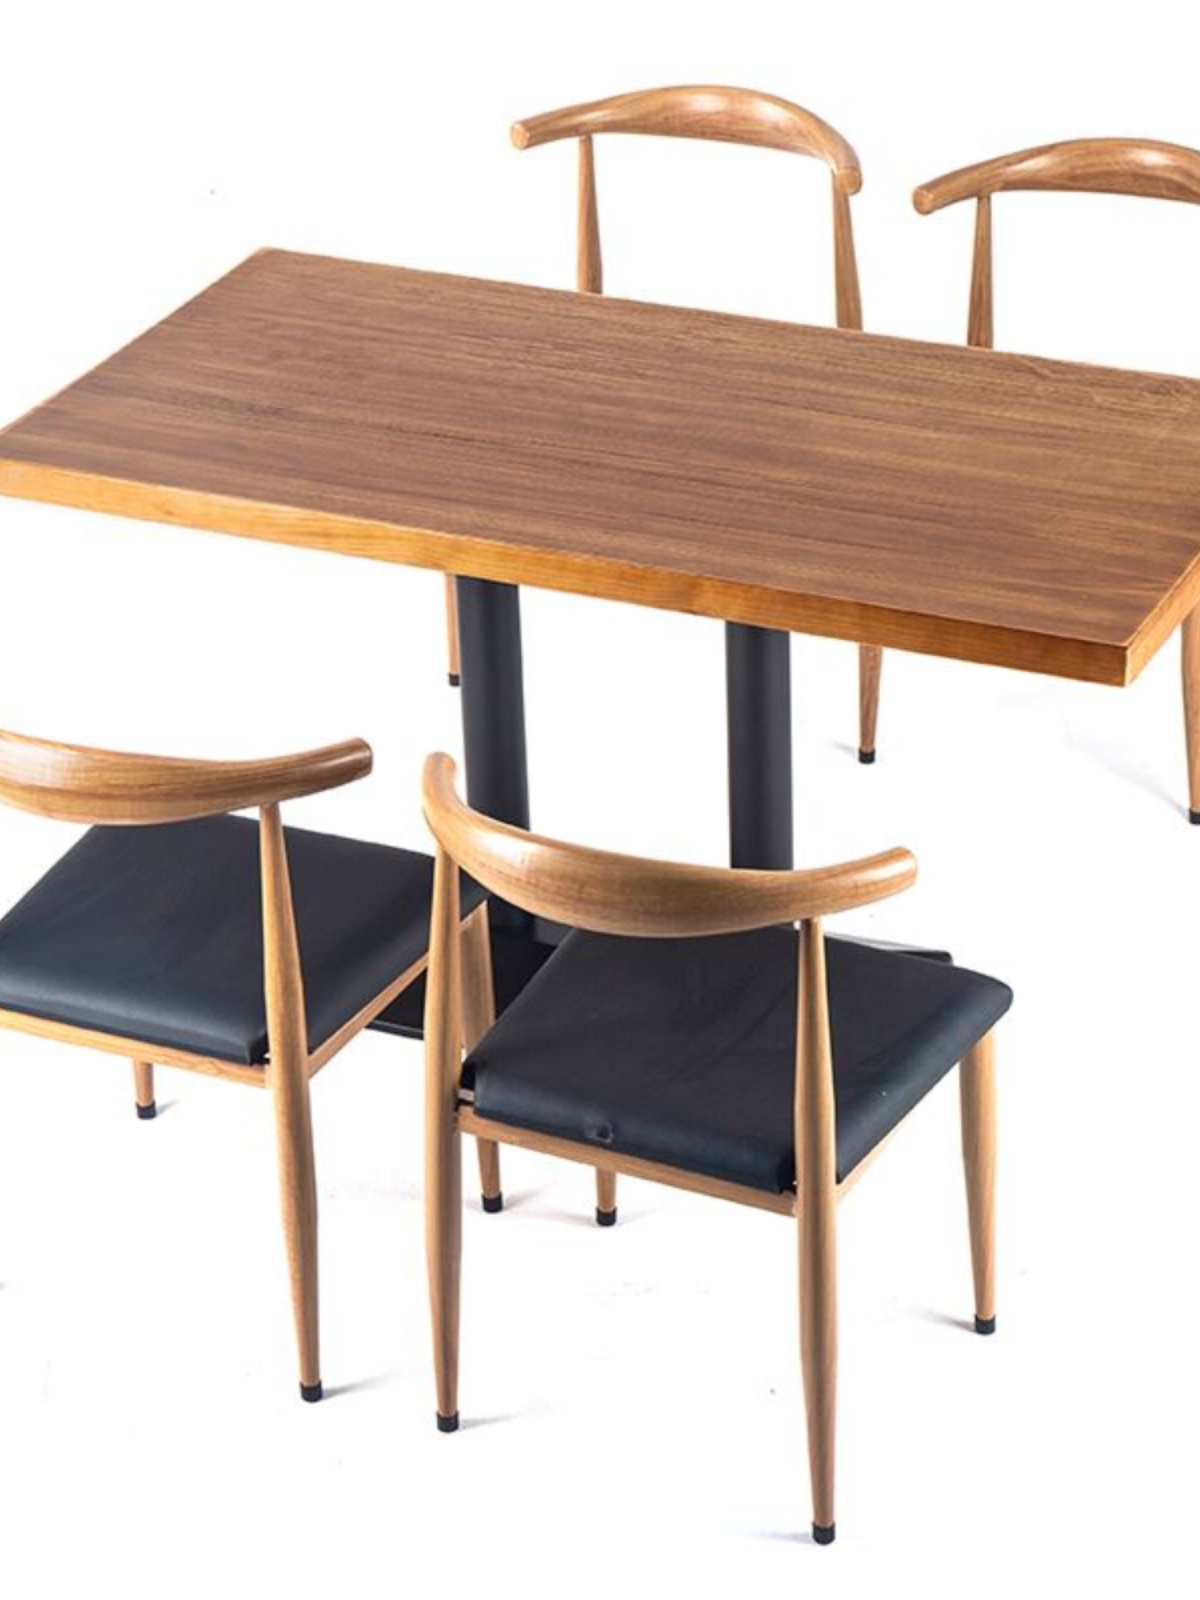 定制工业风实木餐桌椅组合简约家用现代木桌早餐店桌椅经济型食堂